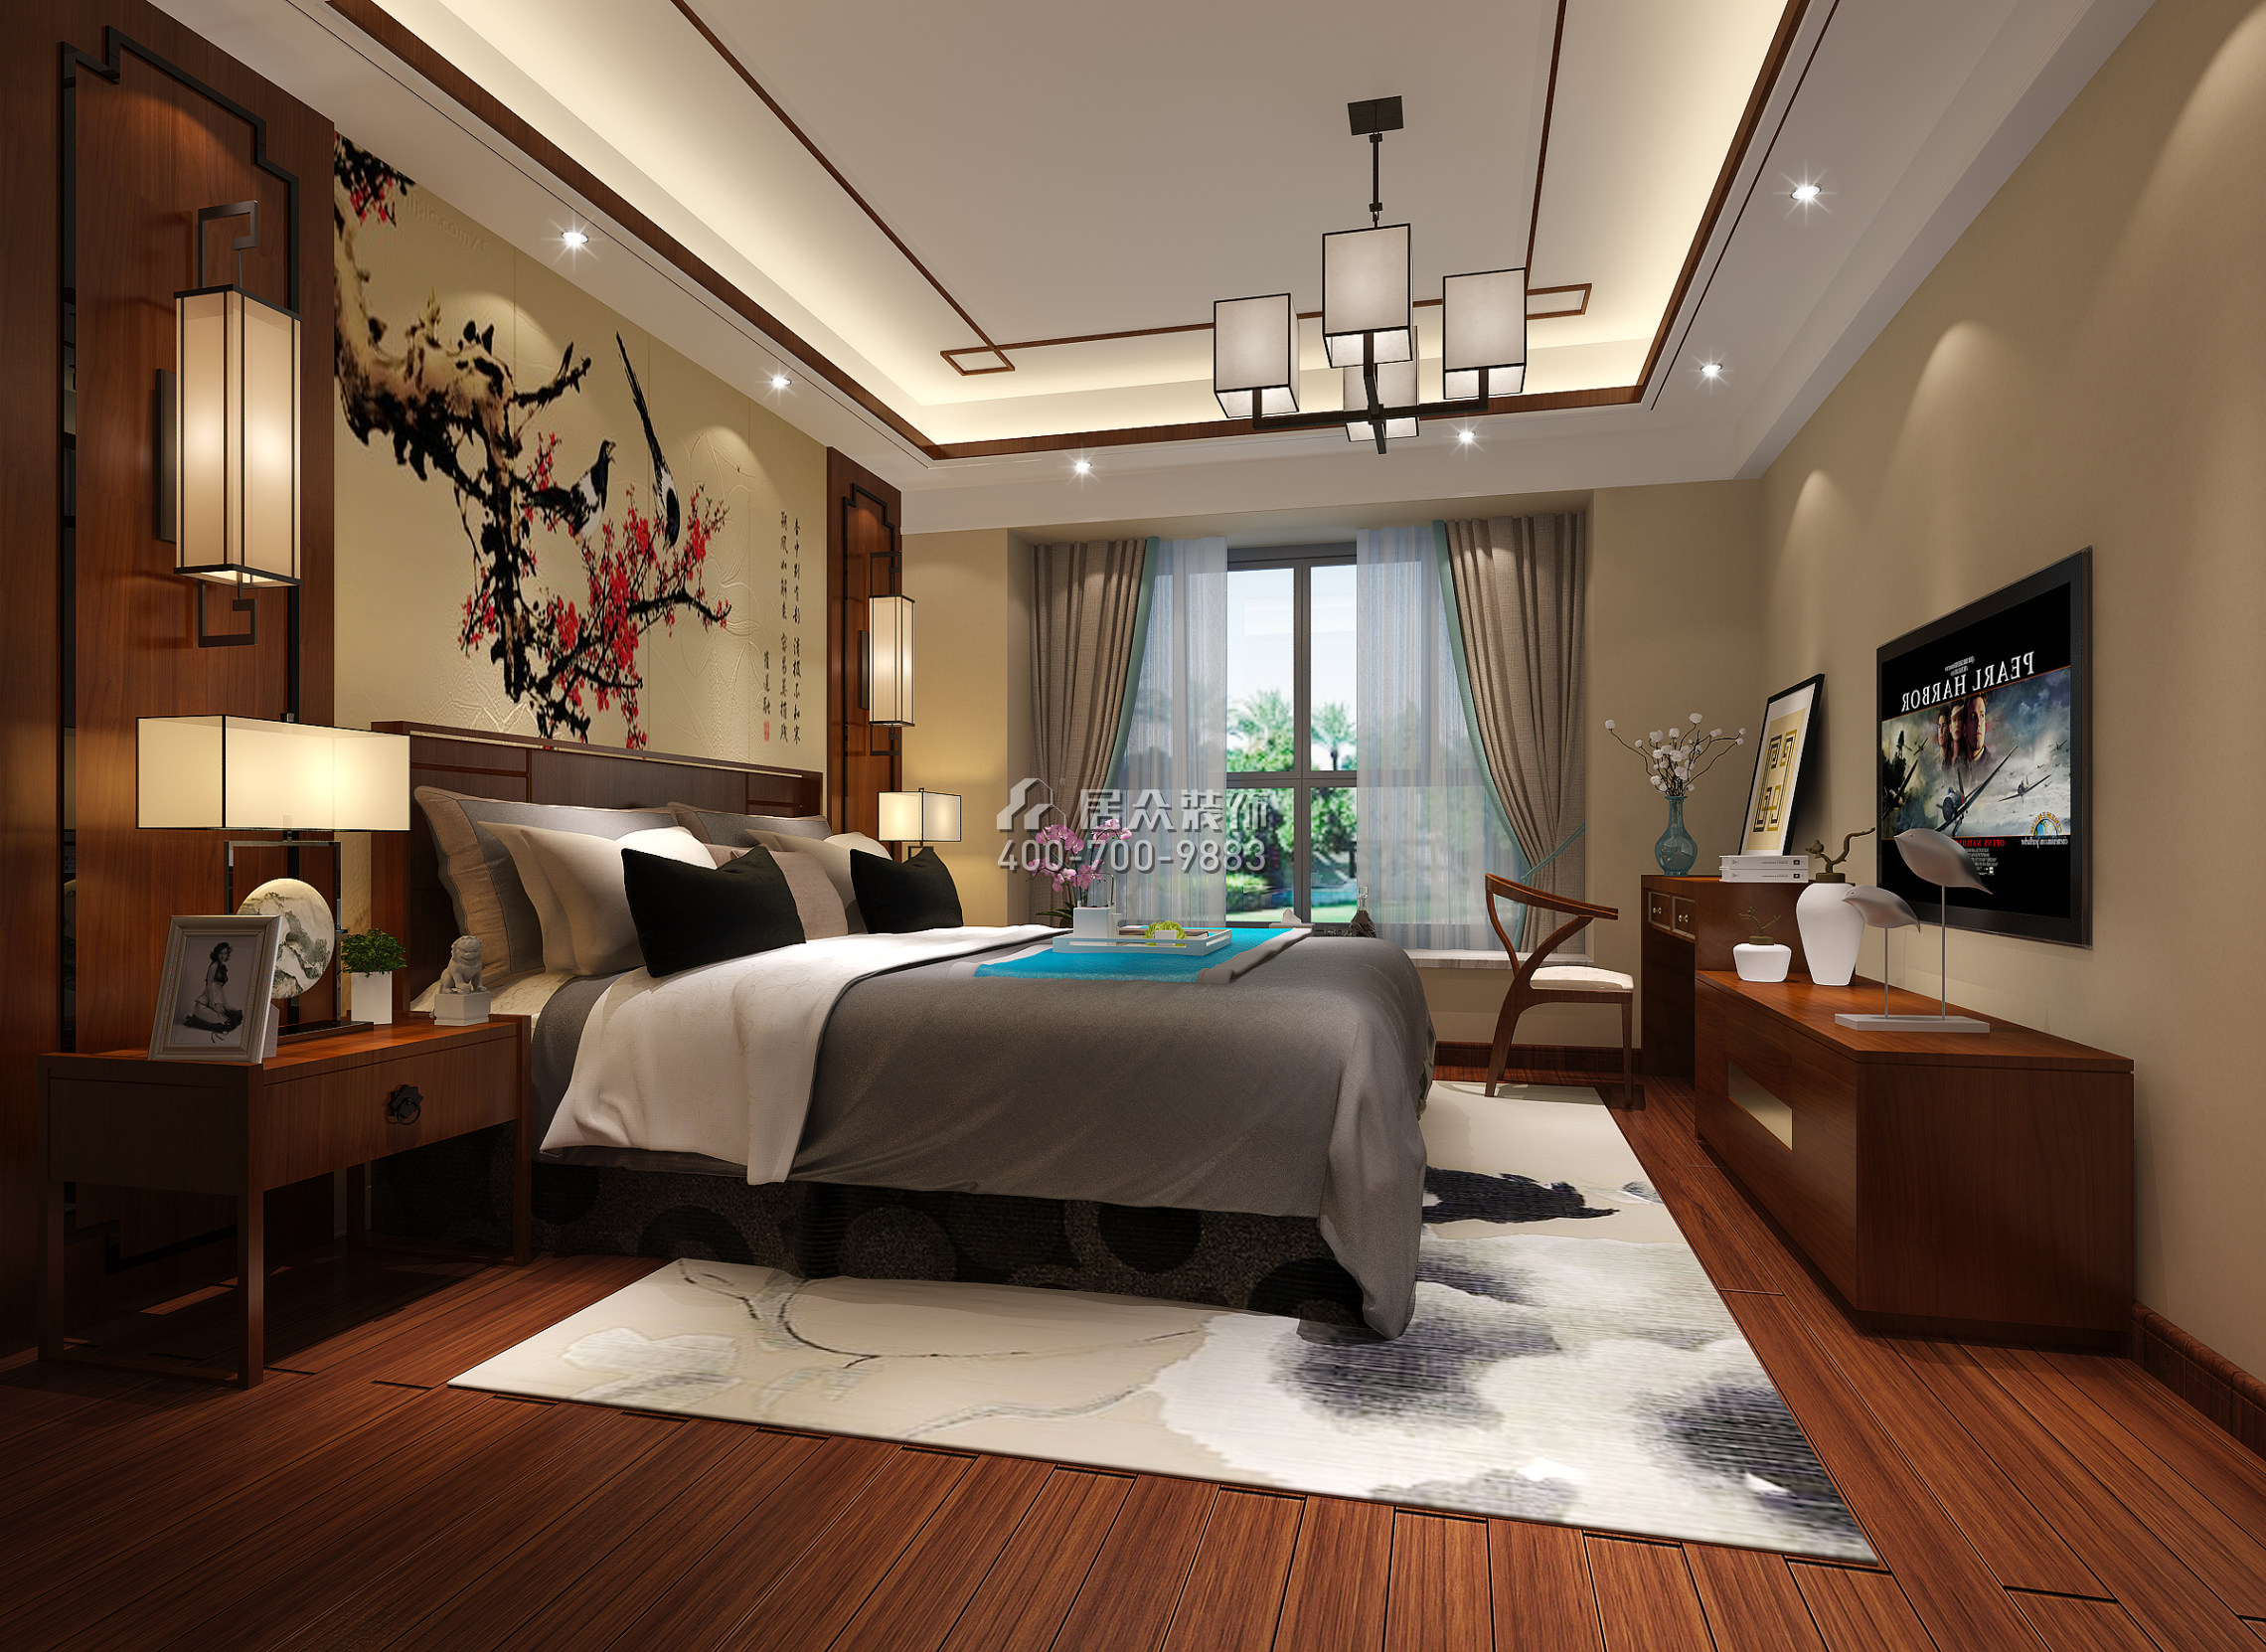 珊瑚天峰170平方米中式風格平層戶型臥室裝修效果圖